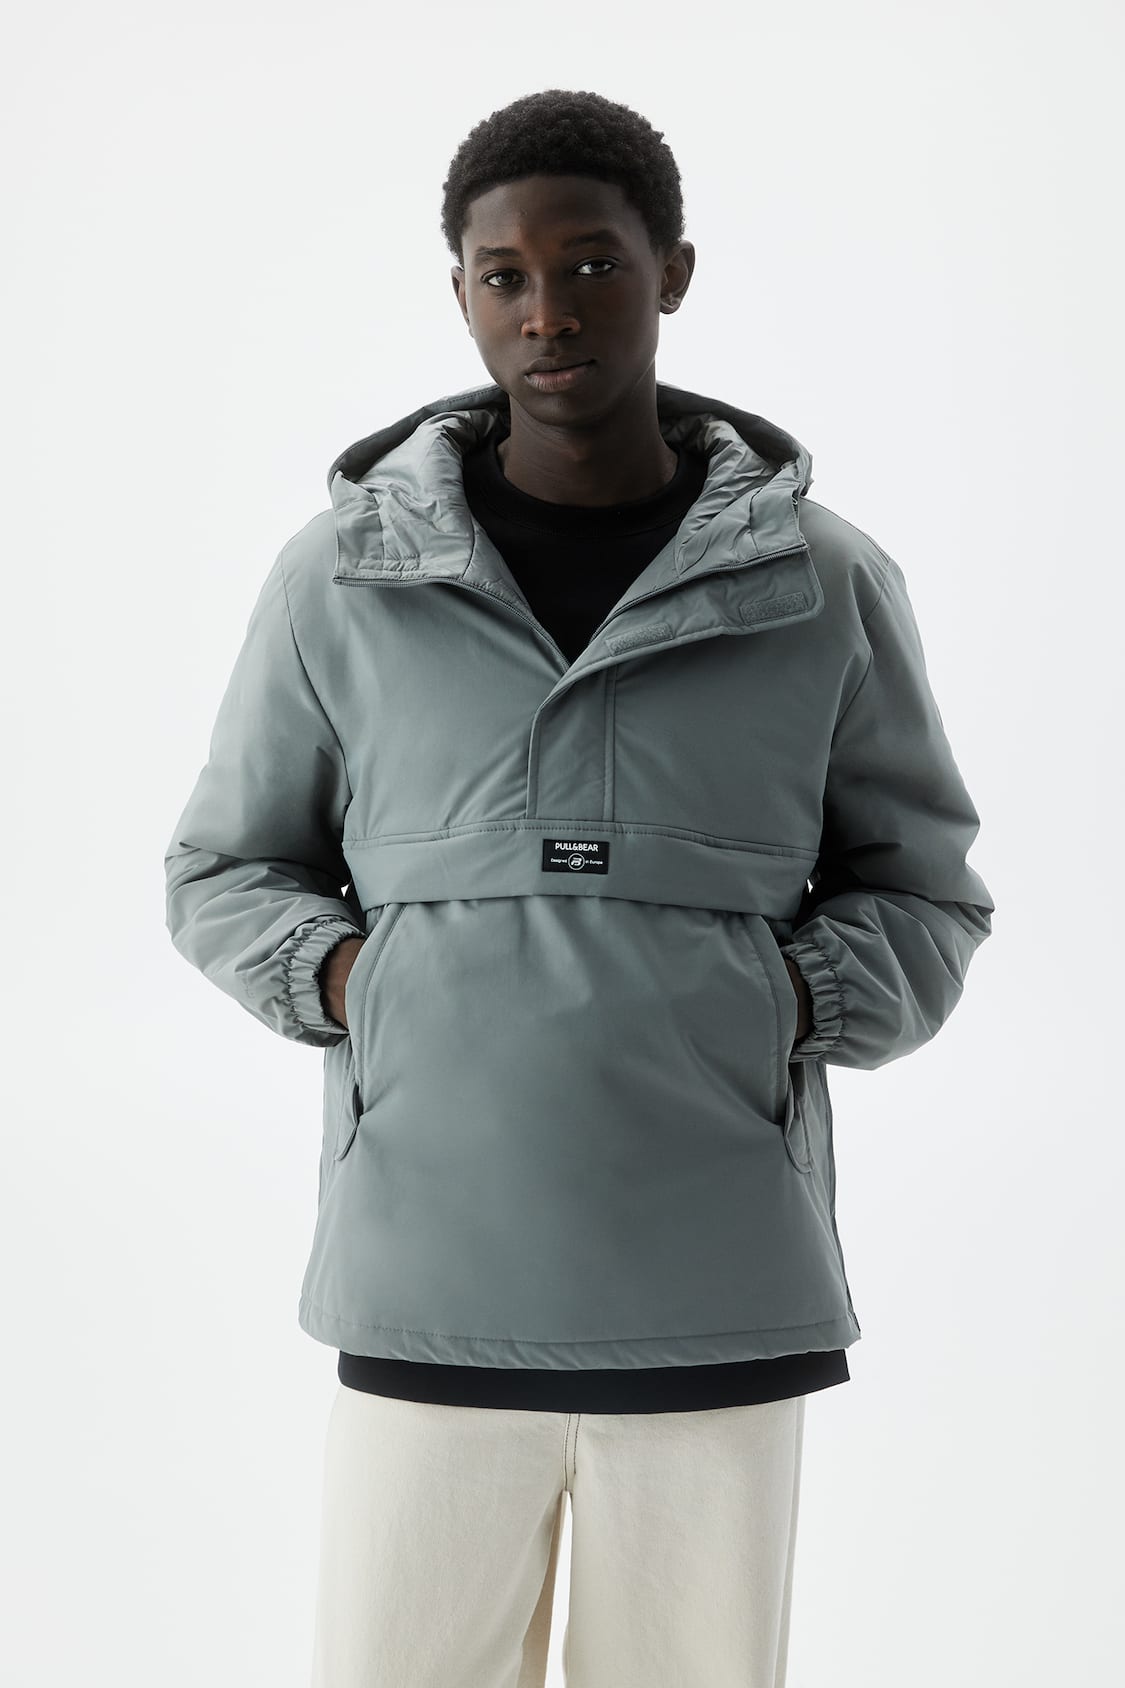 Anorak - Coats & jackets - Clothing - Man - PULL&BEAR Spain